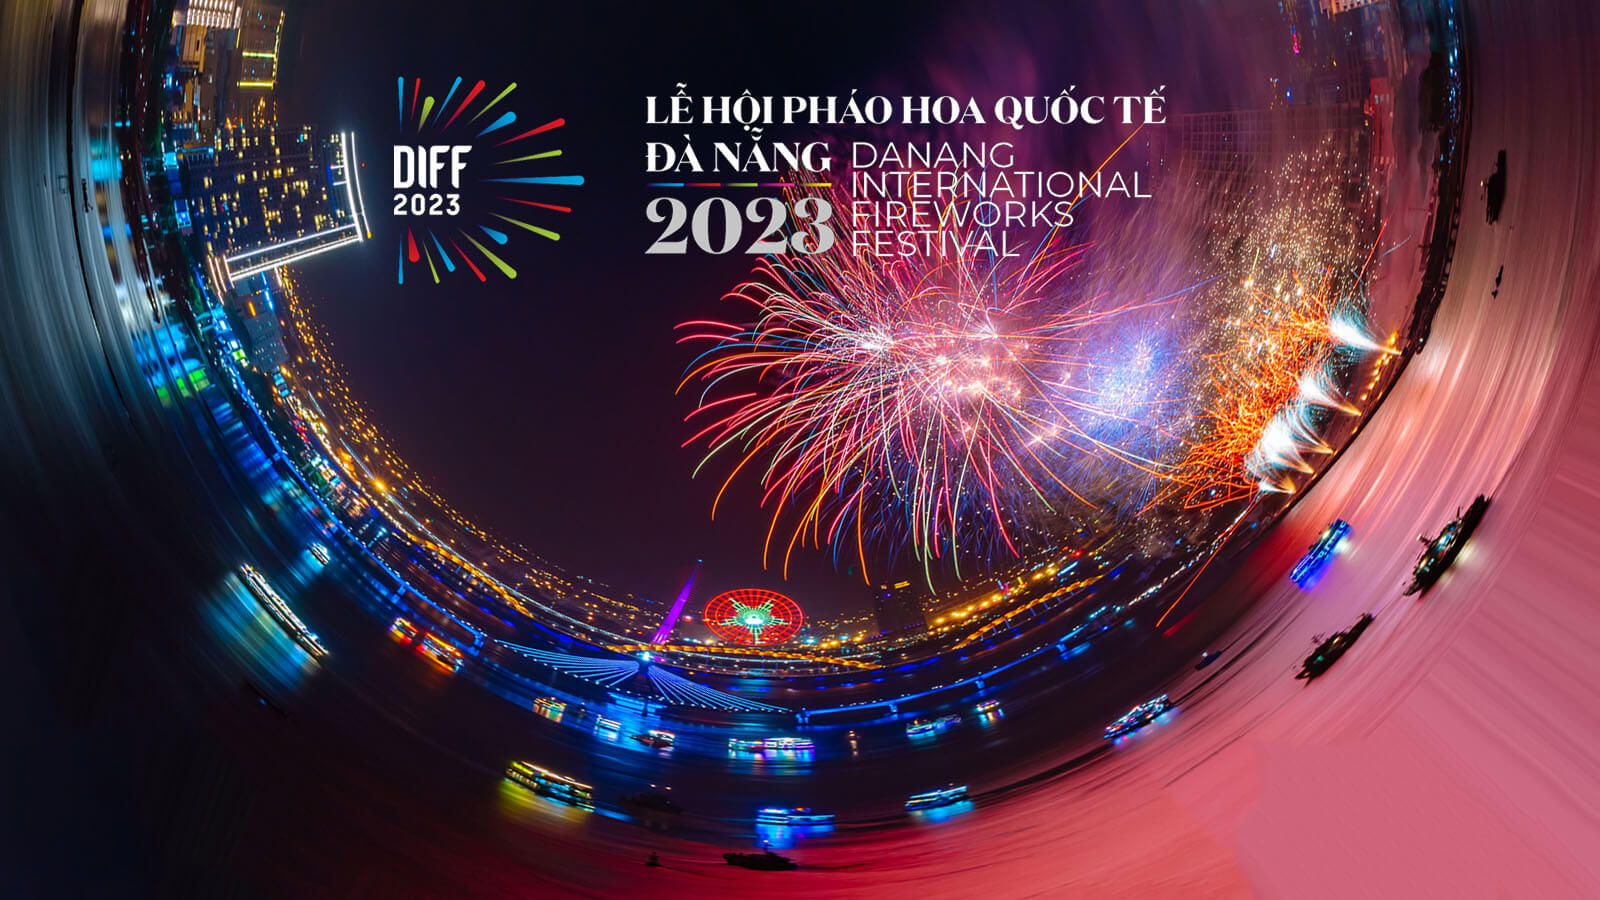 Lễ hội pháo hoa quốc tế Đà Nẵng - DIFF 2023